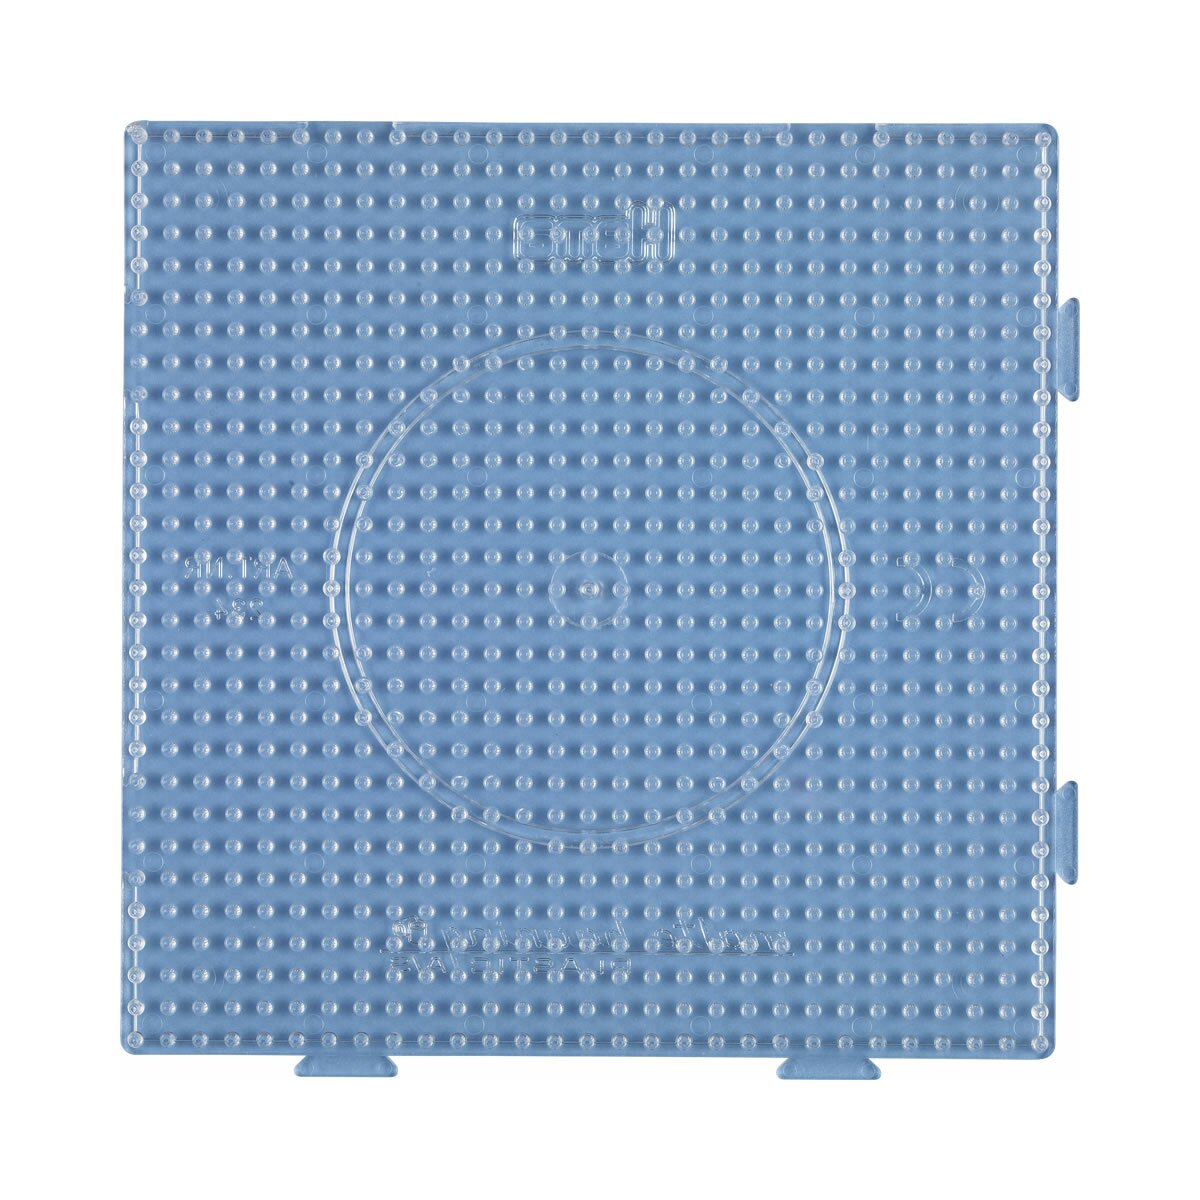 Smowo 8 Bügelperlen Platten Steckplatten Quadratisch und transparent 